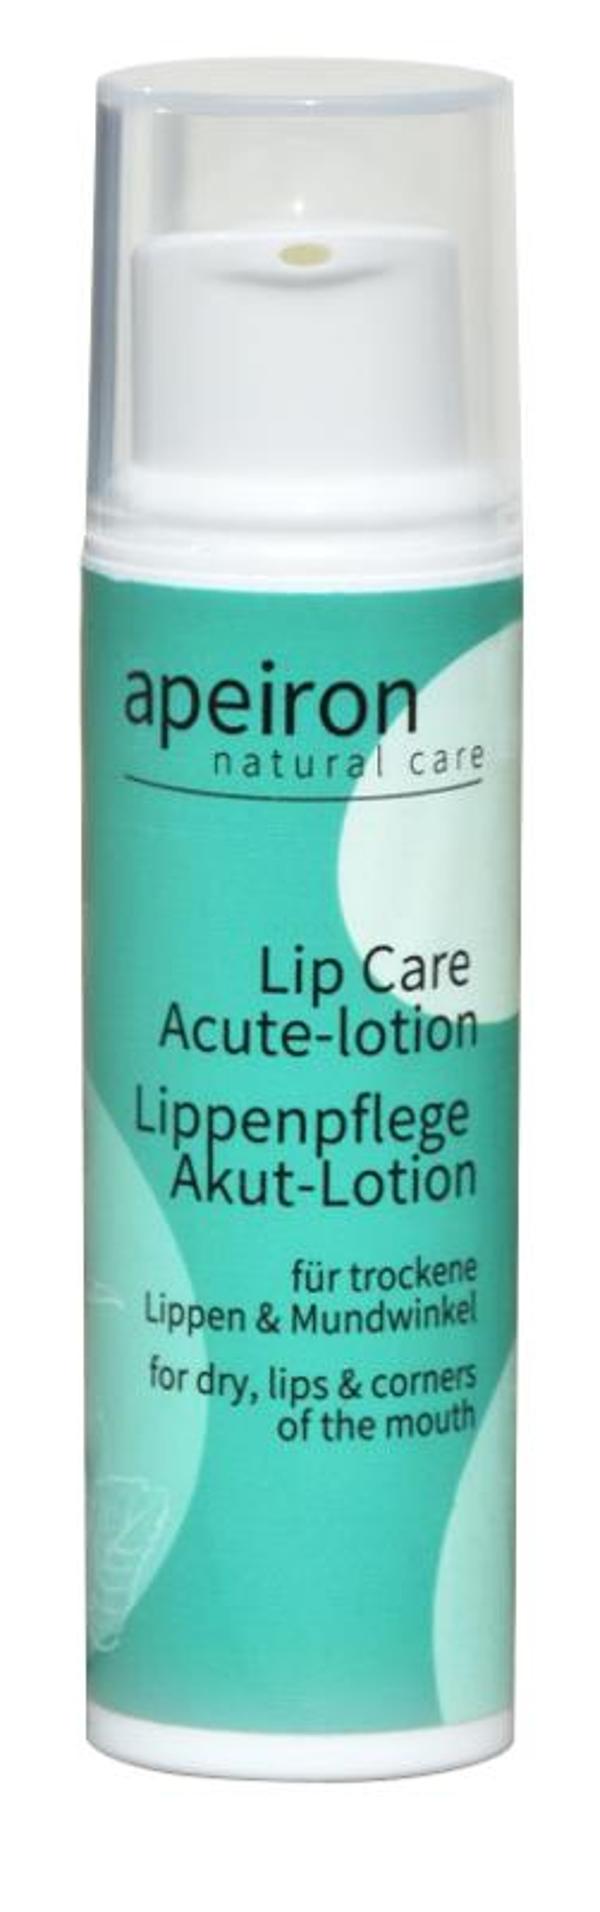 Produktfoto zu Lippenpflege Acute Apeiron